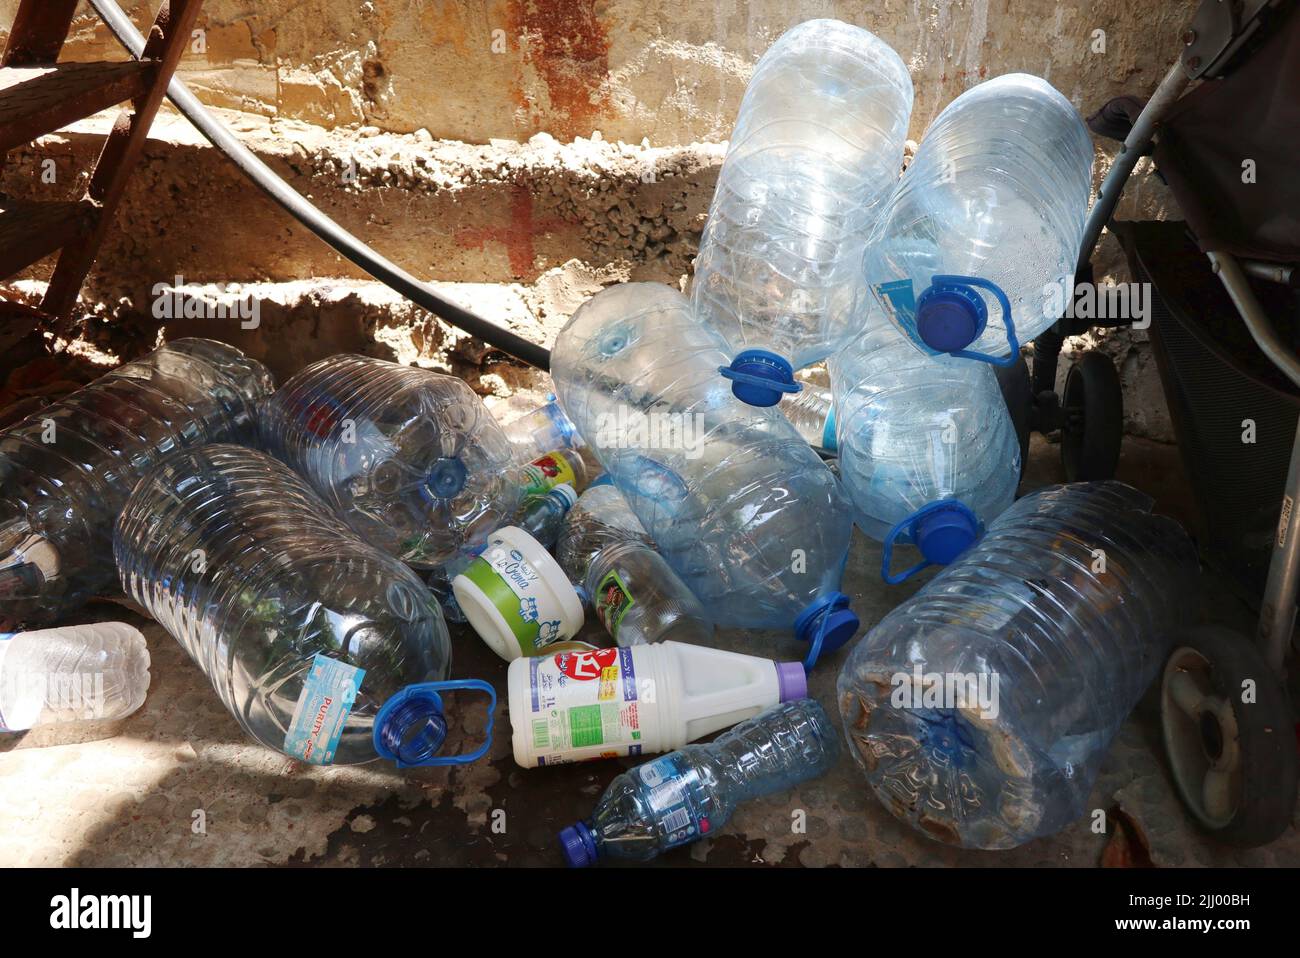 Leere Wasserflaschen im Müll, Beirut, Libanon, am 19 2022. Juli. Im Libanon sind Millionen von Menschen, vor allem Kinder, mit schweren Gesundheitsrisiken konfrontiert, da das Wasserversorgungssystem des Landes aufgrund der Energiekrise am Rand ist, warnte UNICEF in dem am 21 2022. Juli veröffentlichten Bericht ‘Struggling to keep the Taps on“. Eine unzureichende Versorgung mit sicherem Wasser gefährdet Säuglinge und Kinder, die besonders anfällig für wasserbedingte Krankheiten sind, heißt es im Bericht. Die Mehrheit der libanesischen Haushalte ist aufgrund der sehr schlechten Qualität des Leitungswassers, vor allem, auf Flaschenwasser für ihren Trinkbedarf angewiesen Stockfoto